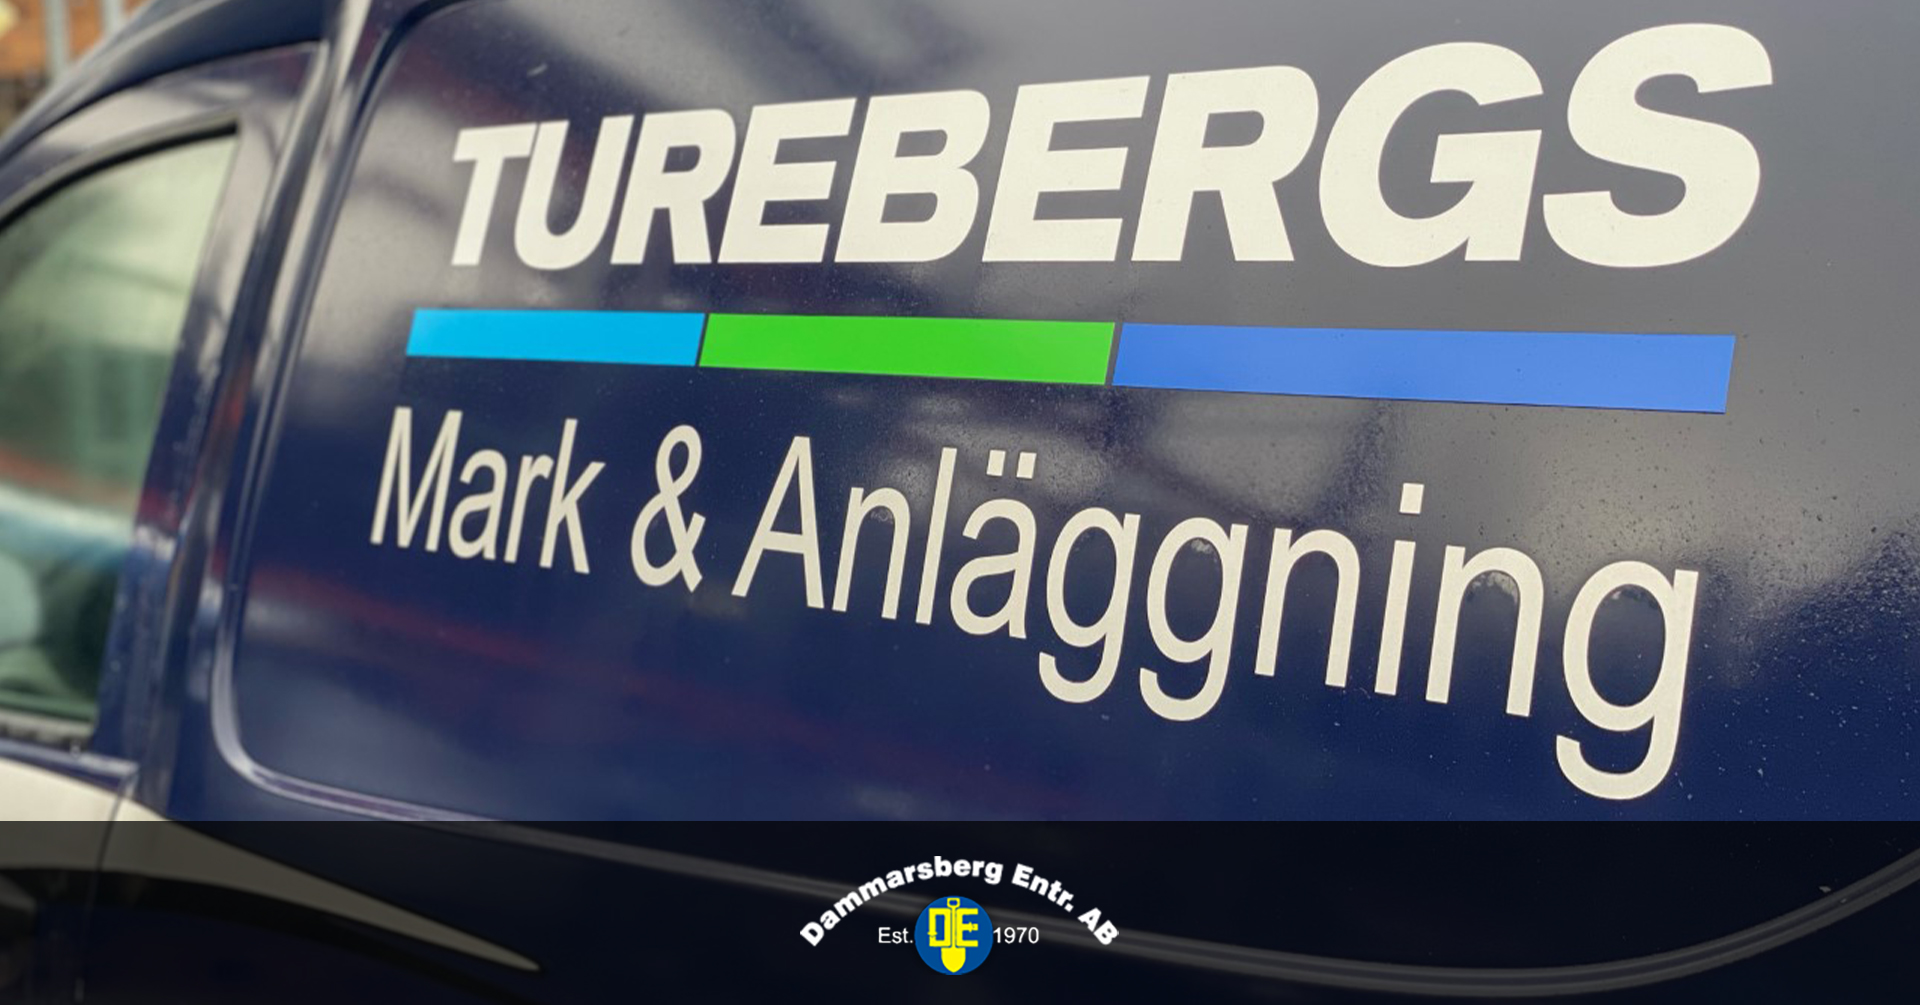 Förvärv av Turebergs Mark & Anläggning AB